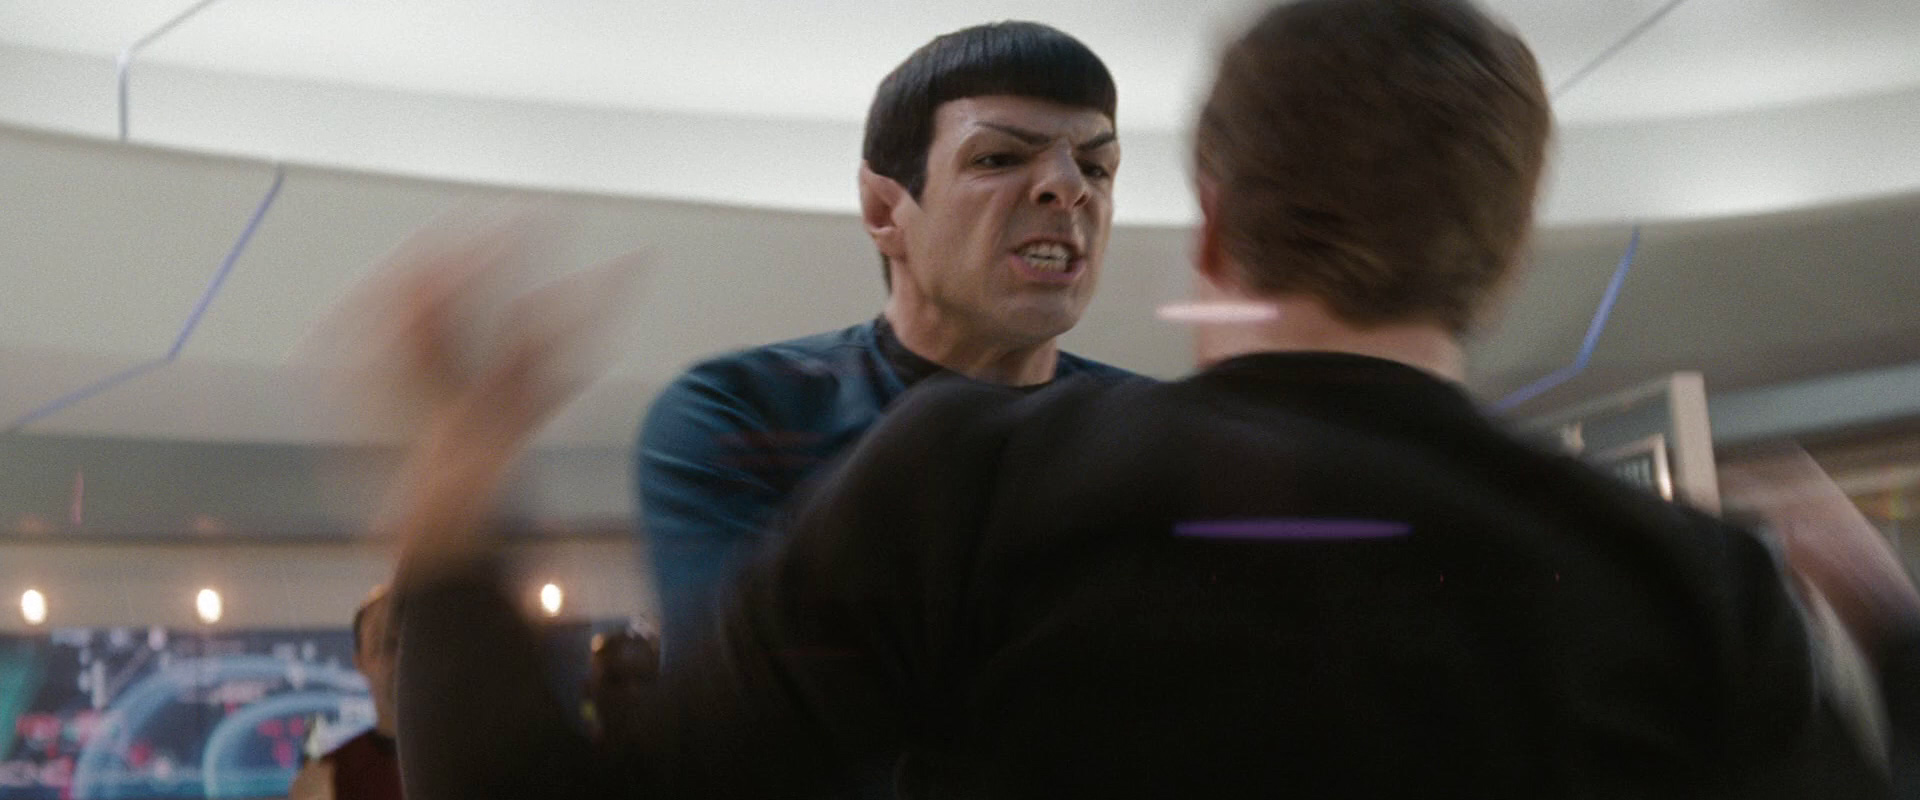 Kirkovi se povede rozzuřit Spocka a ten odstoupí z pozice kapitána.